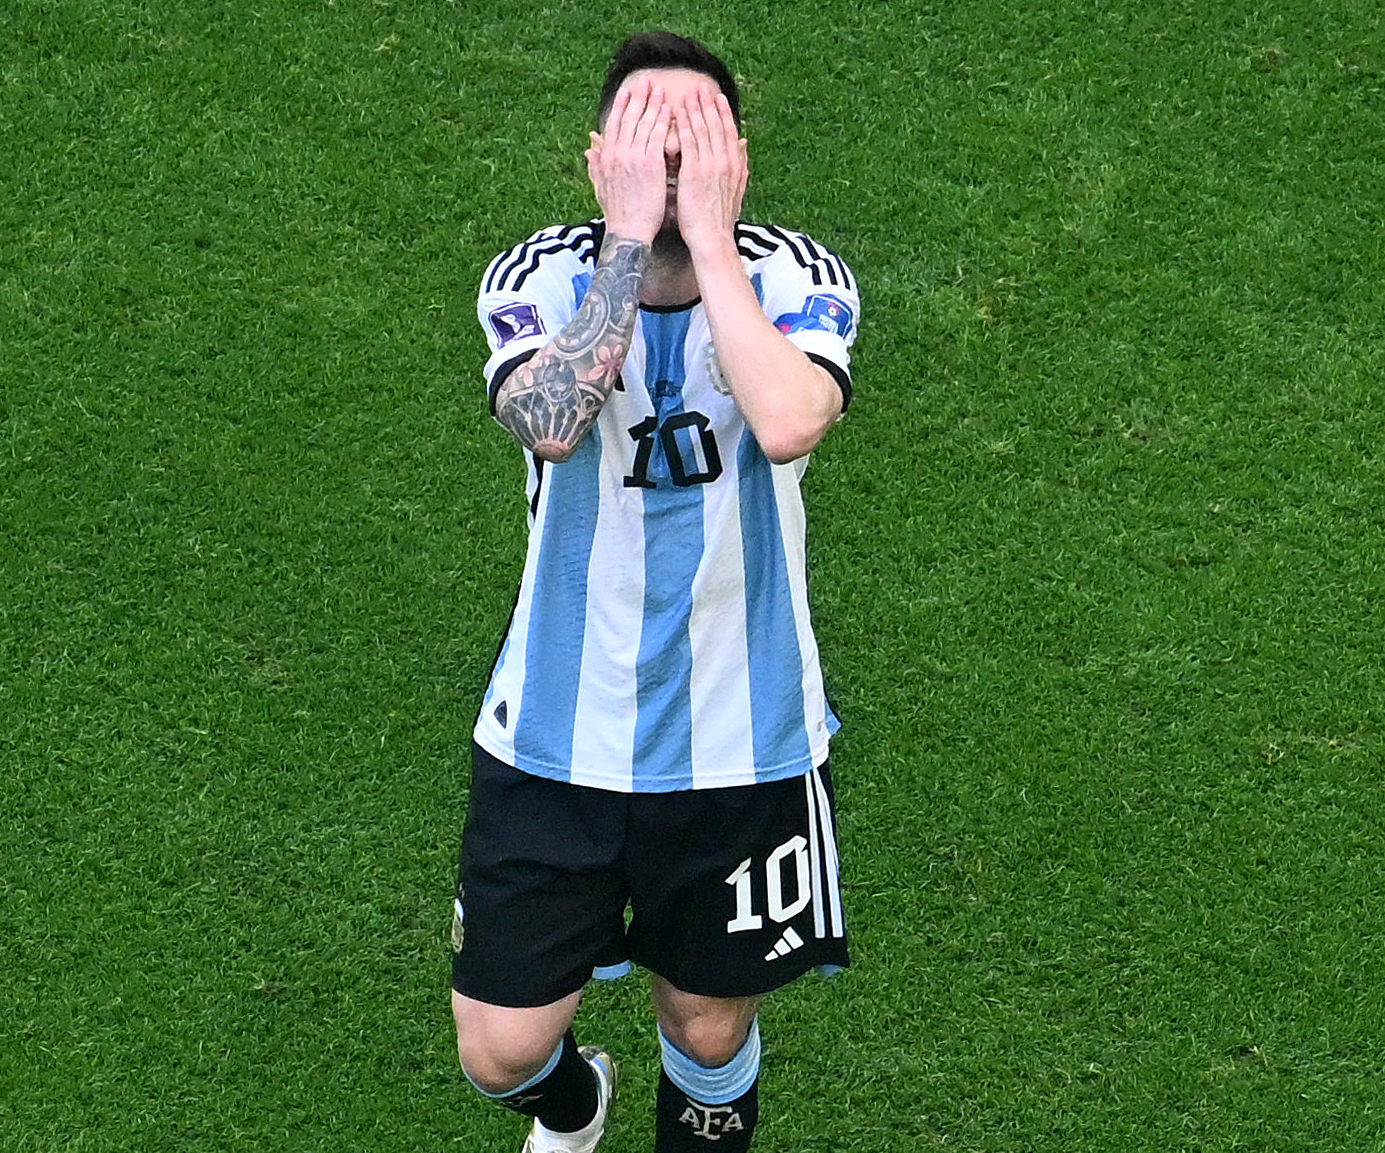 Đội tuyển bóng đá Argentina luôn là một trong những địa điểm hấp dẫn để theo dõi. Chơi bóng với tâm hồn và tình yêu với môn thể thao, những ngôi sao của đội tuyển Argentina thực sự đáng xem. Hãy xem hình ảnh của đội tuyển bóng đá Argentina để bắt đầu hành trình tìm hiểu về bóng đá.